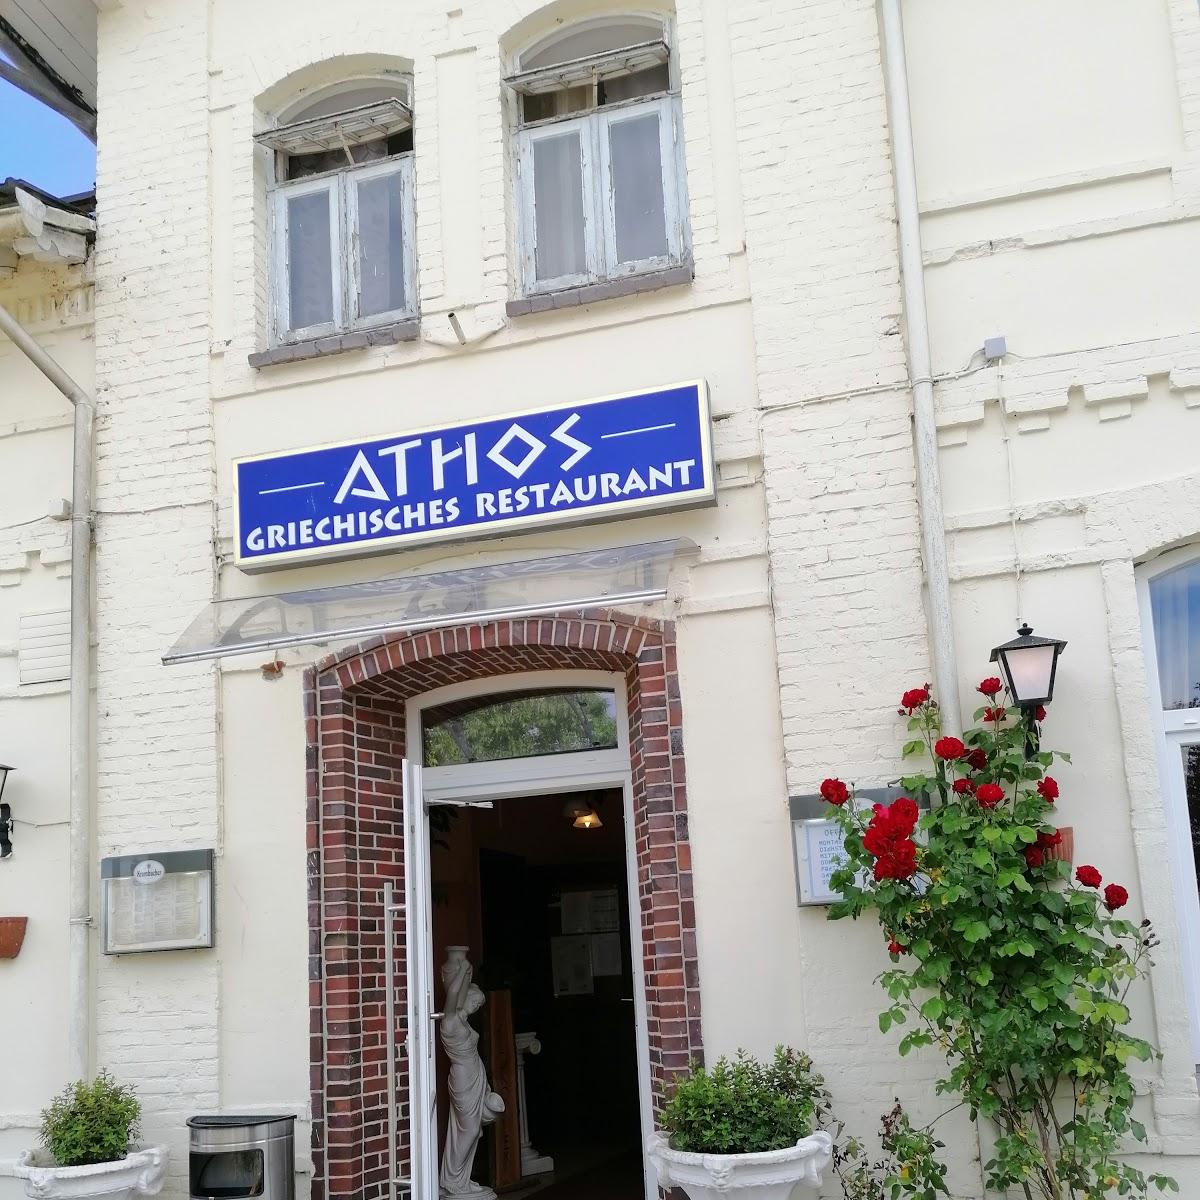 Restaurant "Athos" in Ascheffel